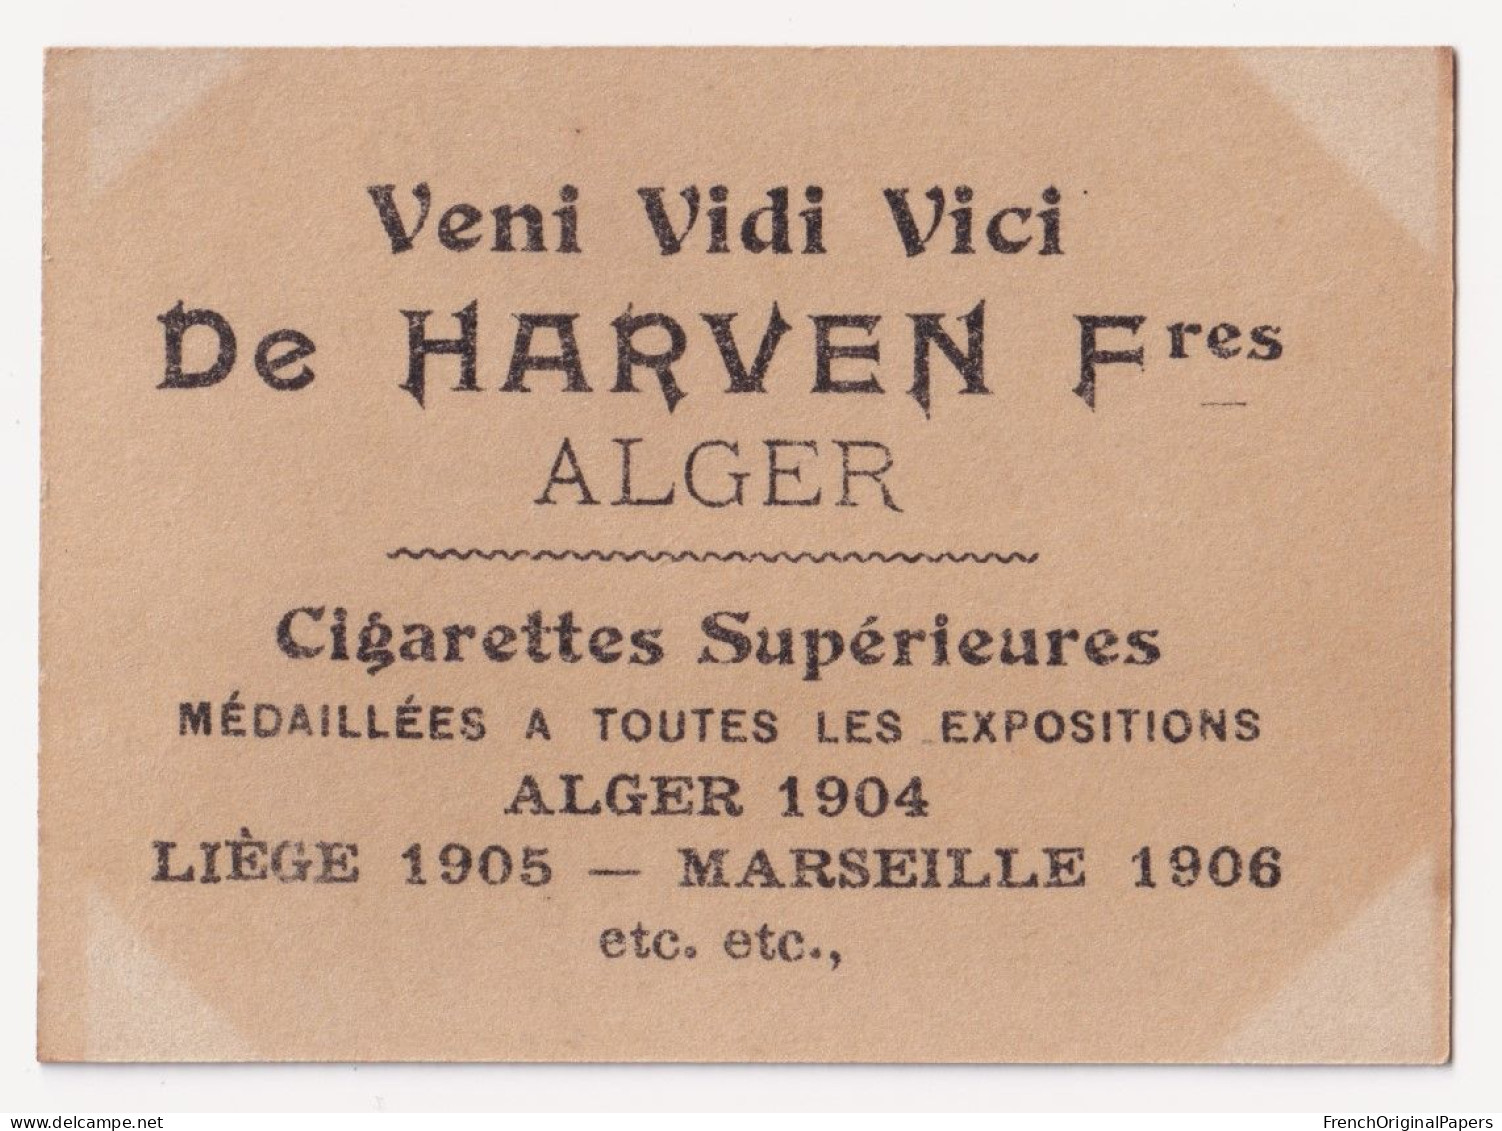 Lonita - Cigarettes De Harven 1900/10 Photo Femme Sexy Lady Pin-up Woman Nue Nude Nu Seins Nus Vintage Alger Tigre A62-8 - Zigarettenmarken